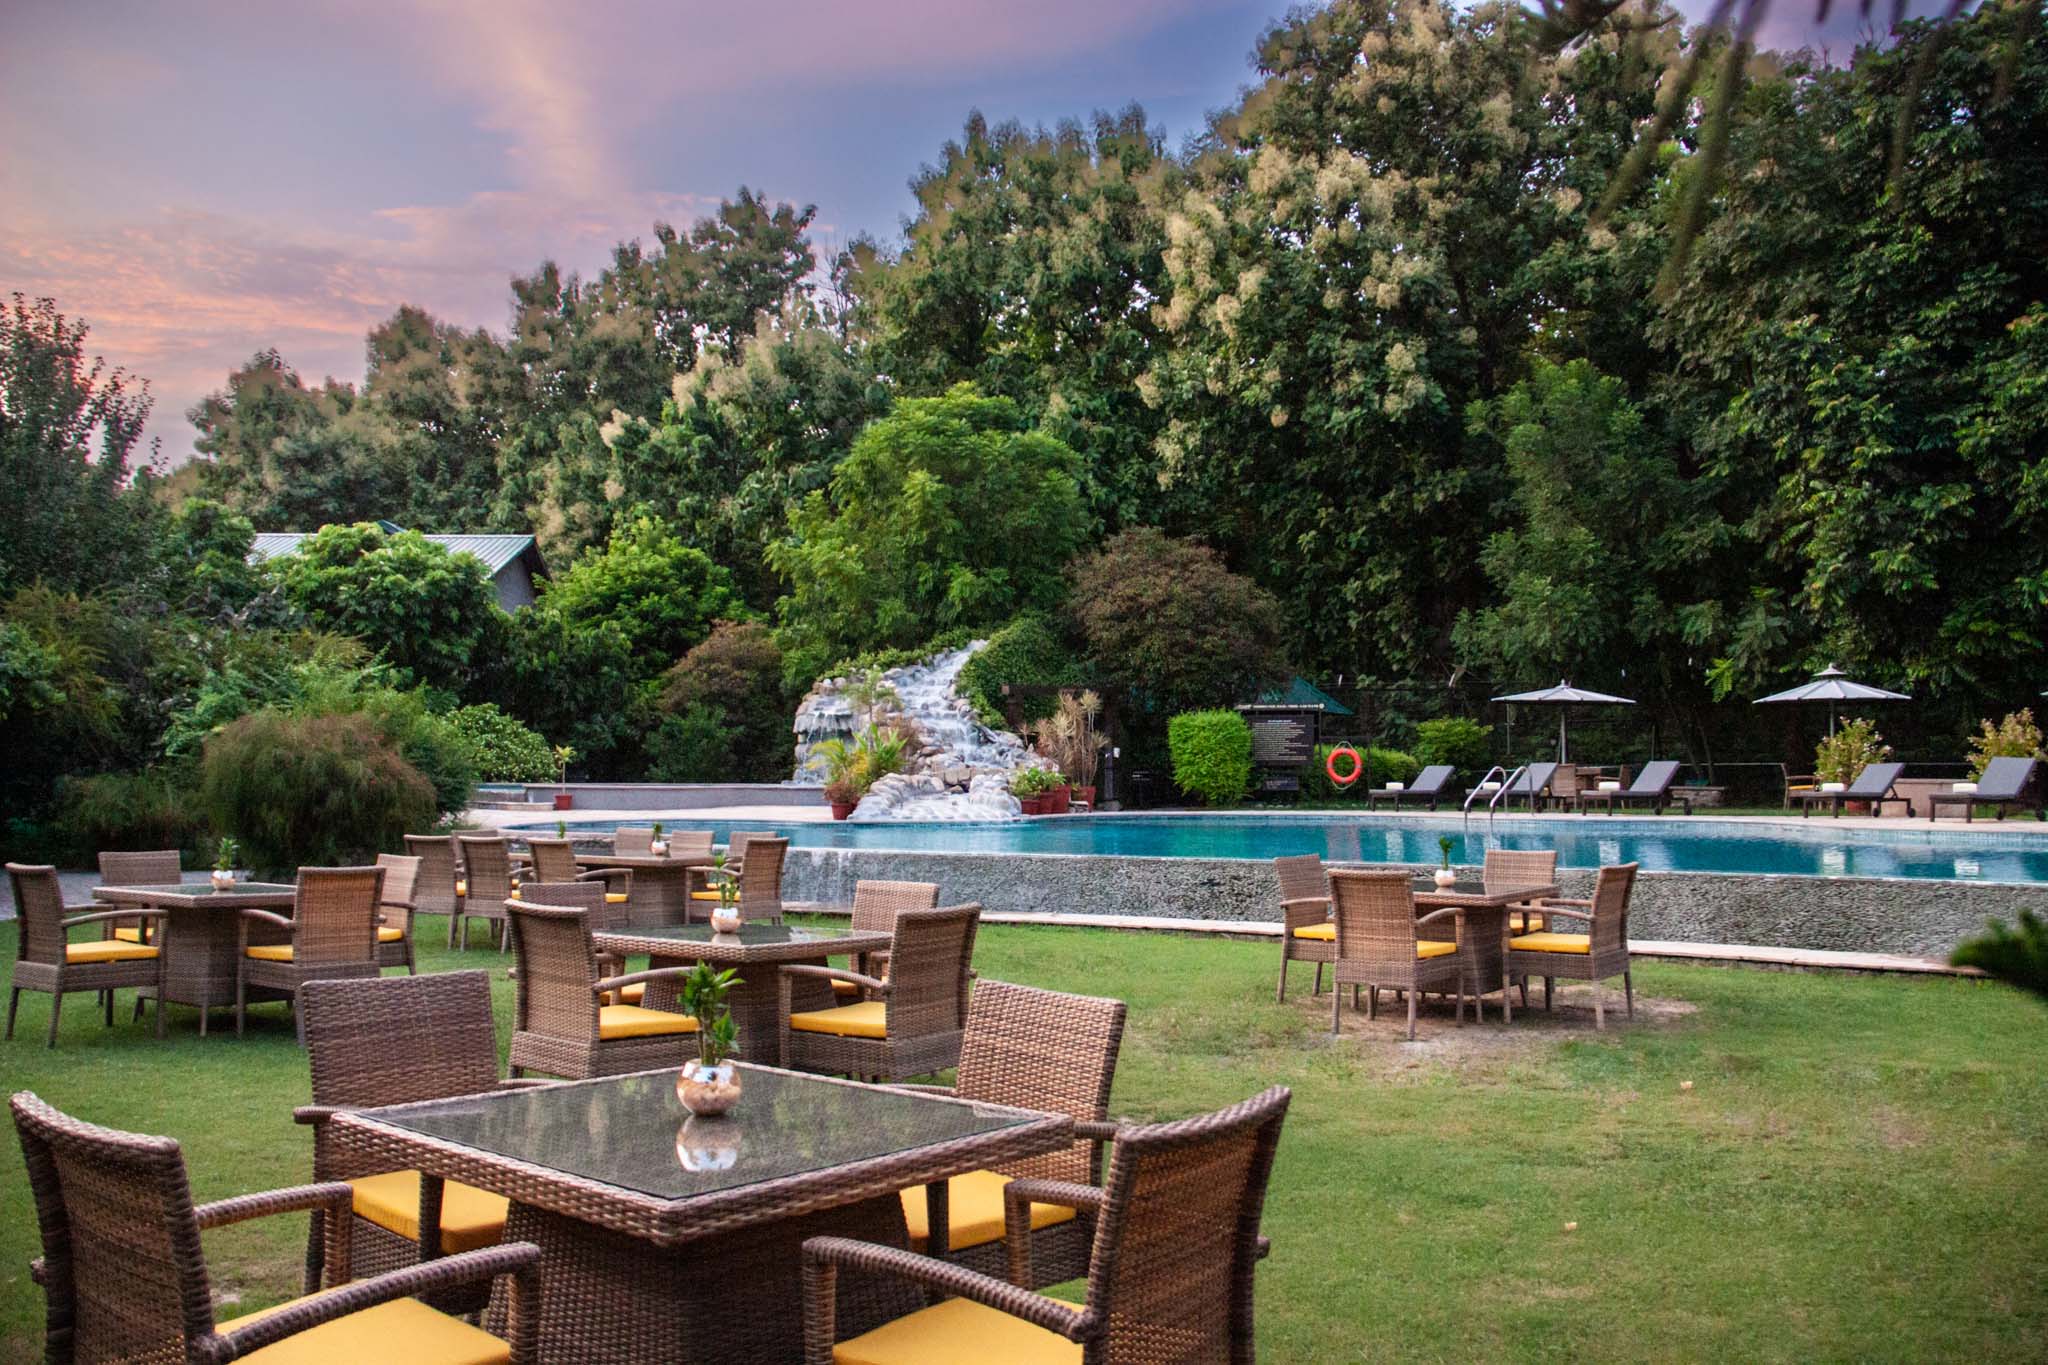 15 Reasons Why You Should Visit Aahana Resort This Summer